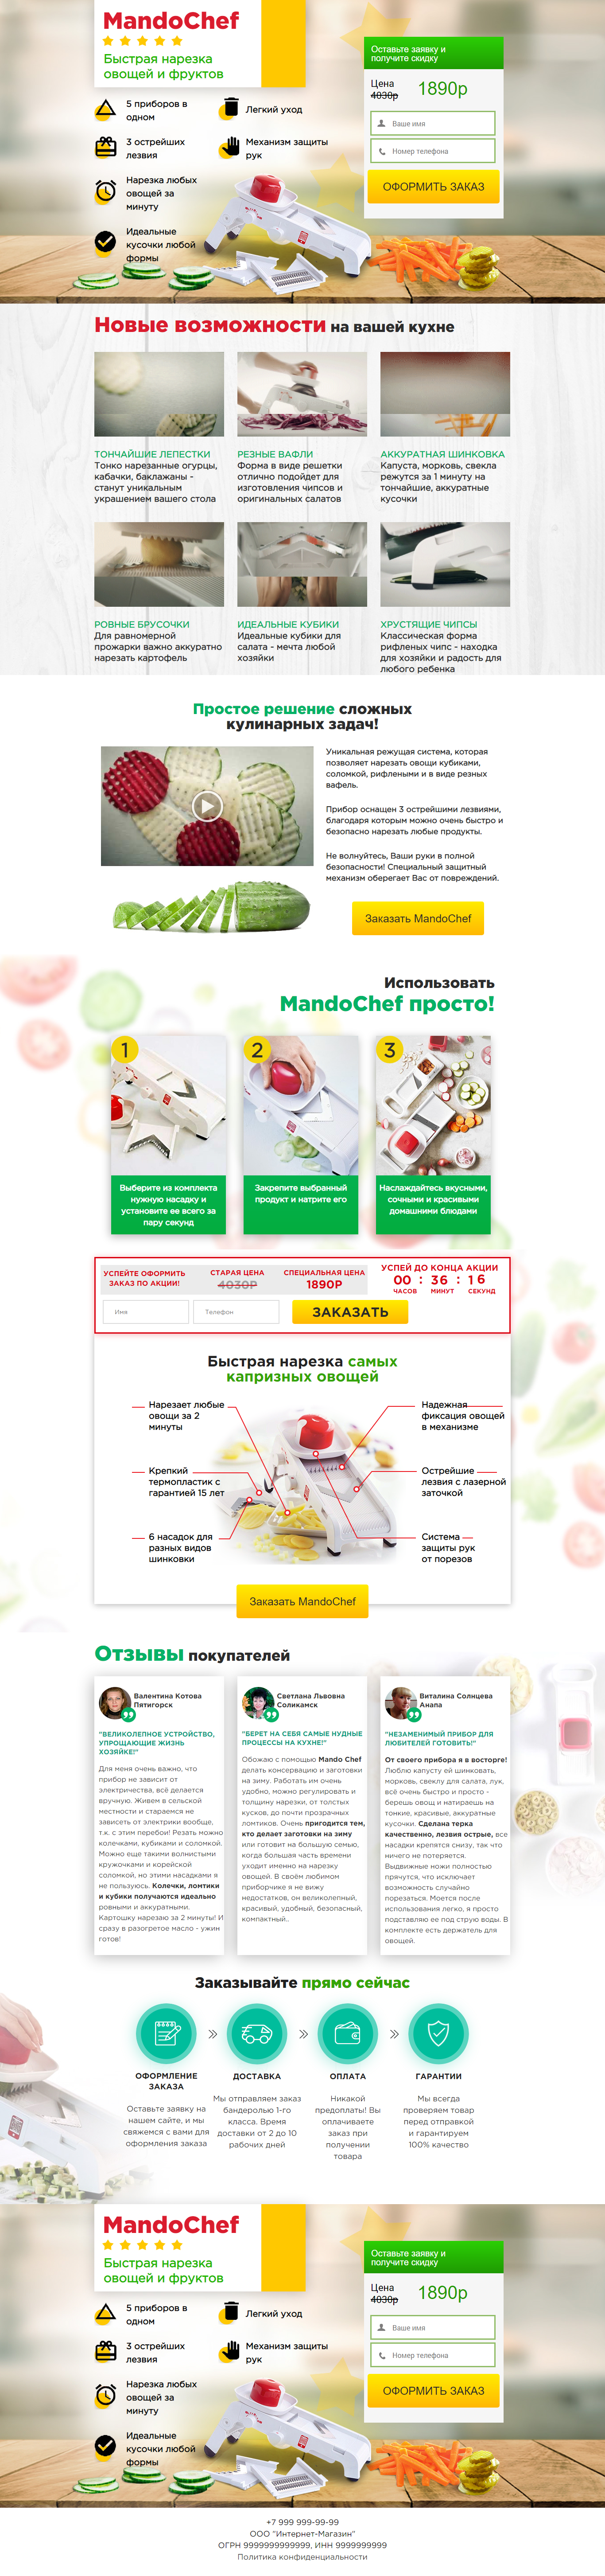 Шаблон лендинга:MandoChef быстрая нарезка овощей и фруктов 